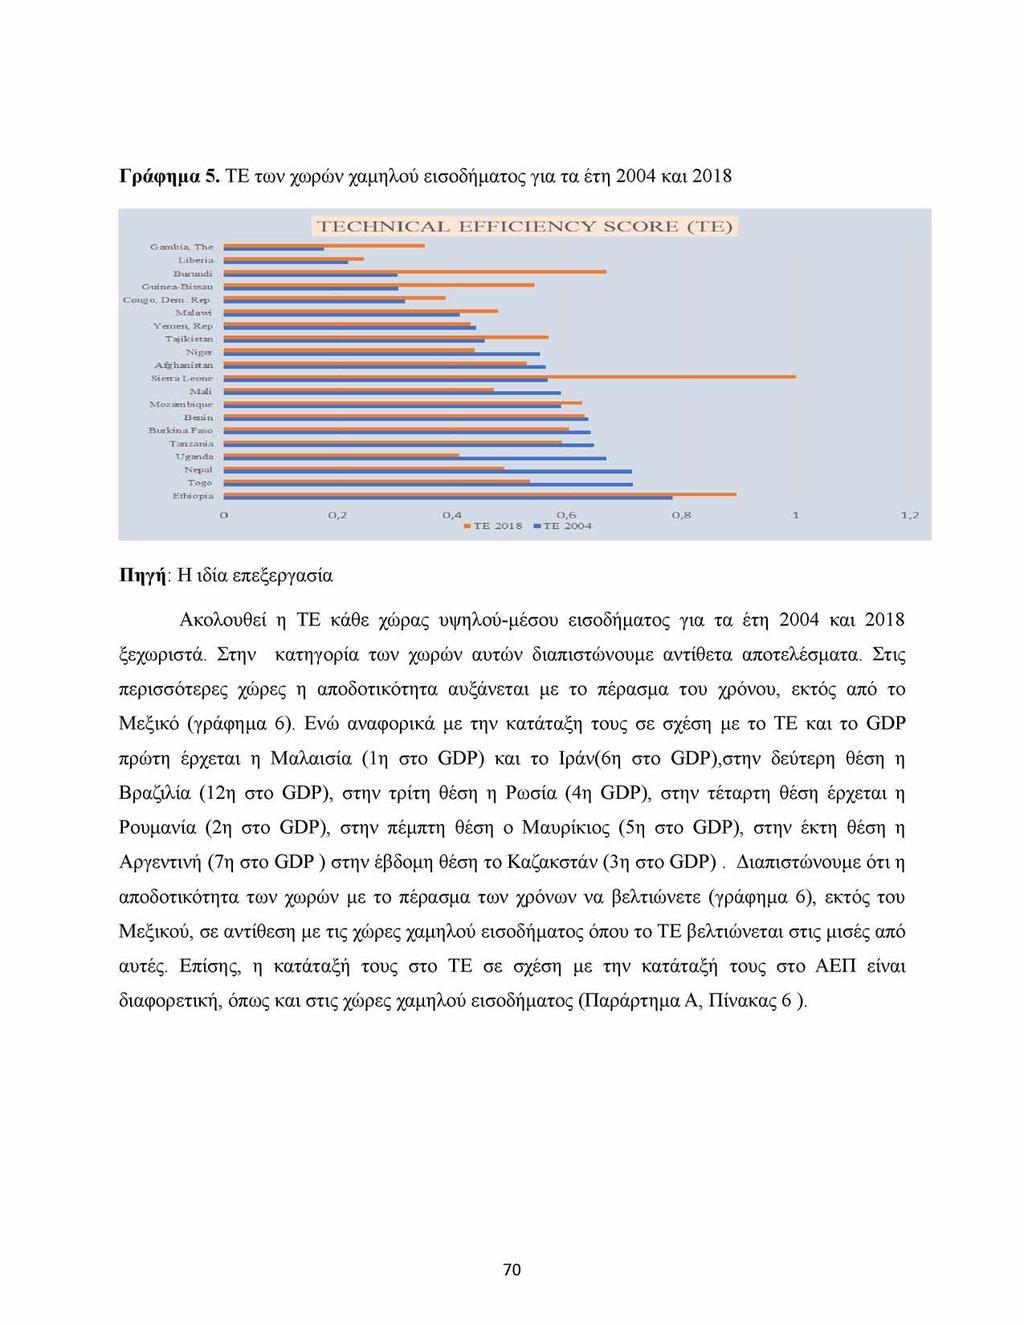 Γράφημα 5. TE των χωρών χαμηλού εισοδήματος για τα έτη 2004 και 208 Gambia, The Liberia Burundi I Guinea Bissau Congo.